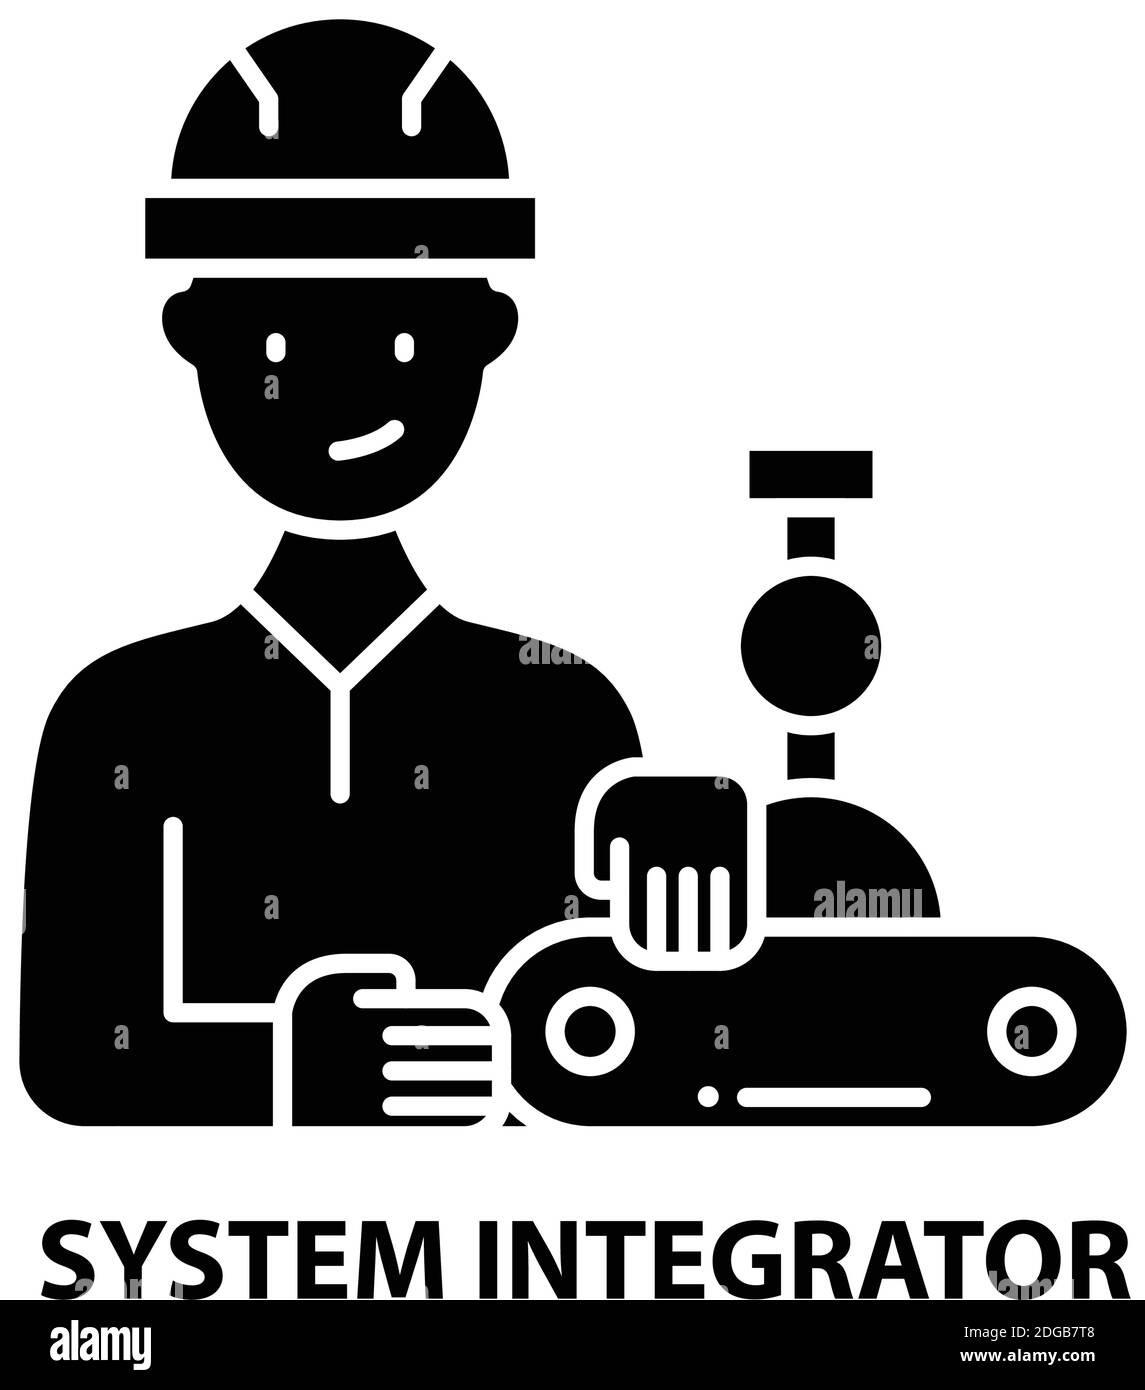 Systemintegrator-Symbol, schwarzes Vektorzeichen mit editierbaren Konturen, Konzeptdarstellung Stock Vektor